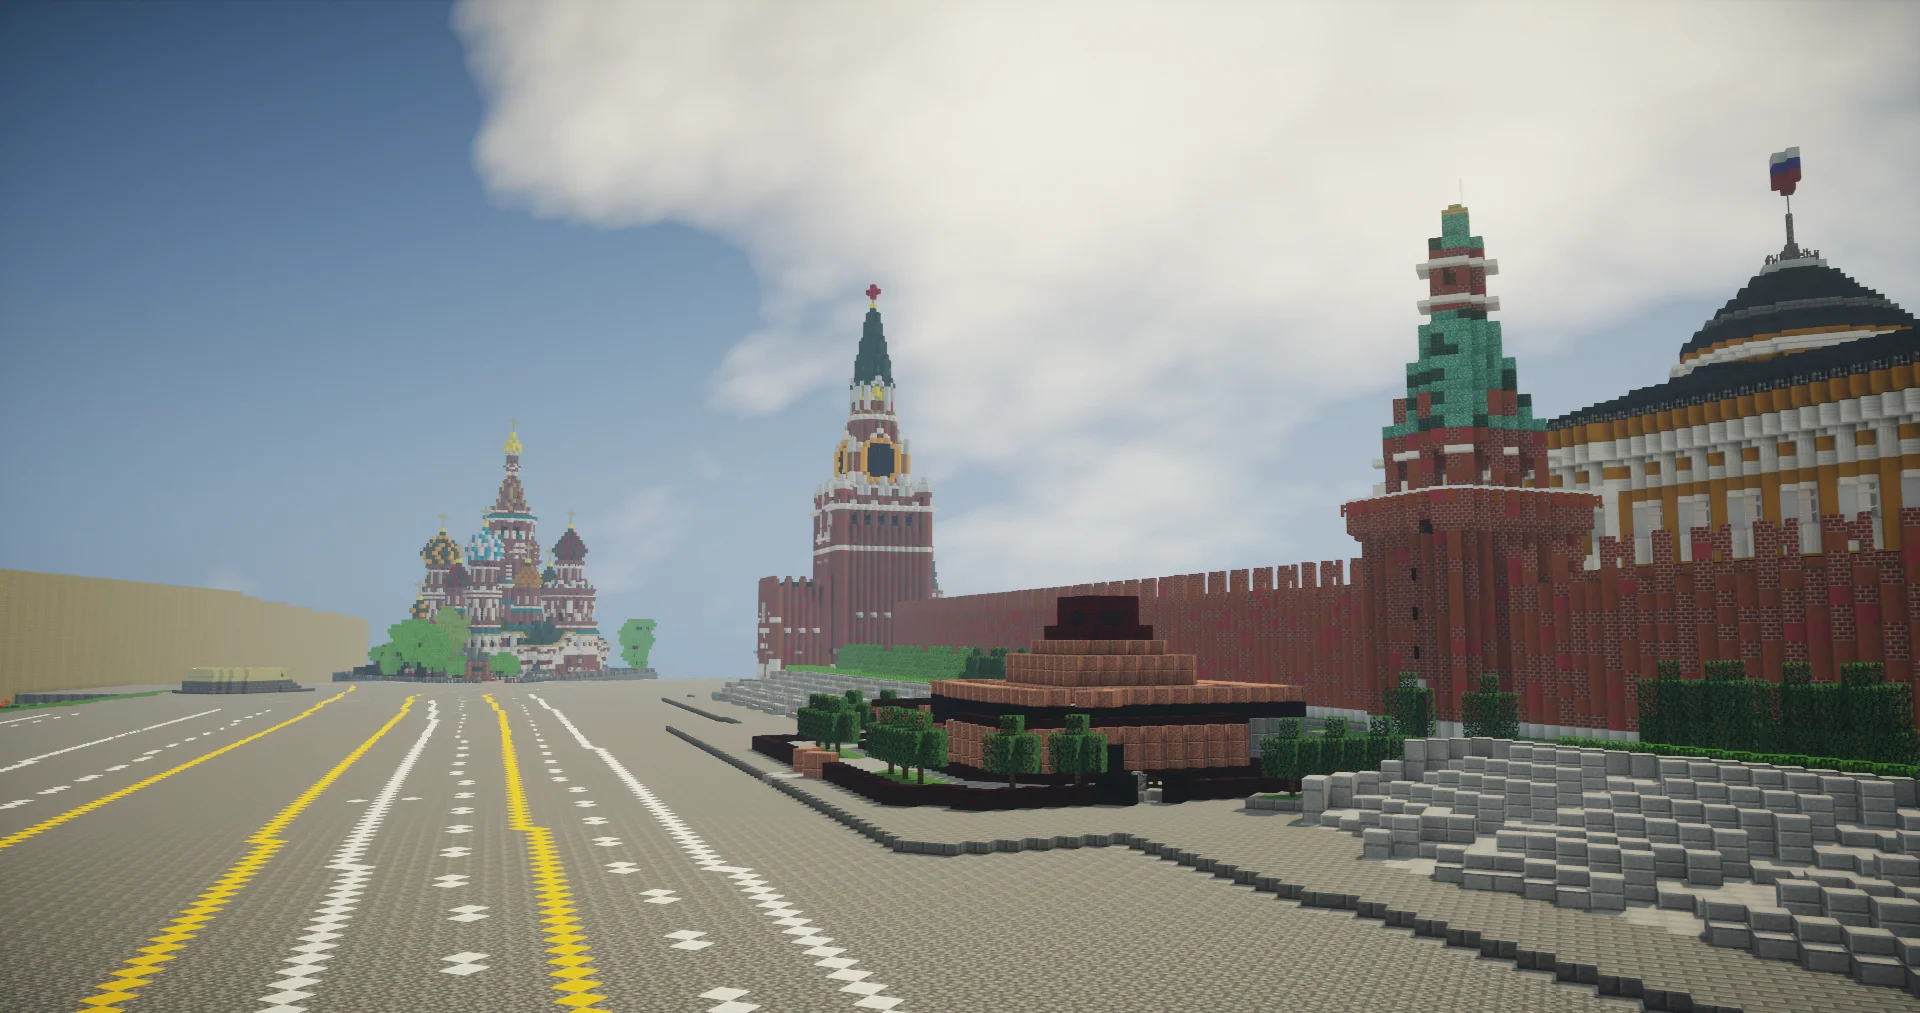 Галерея: достопримечательности России, воссозданные в Minecraft - фото 2